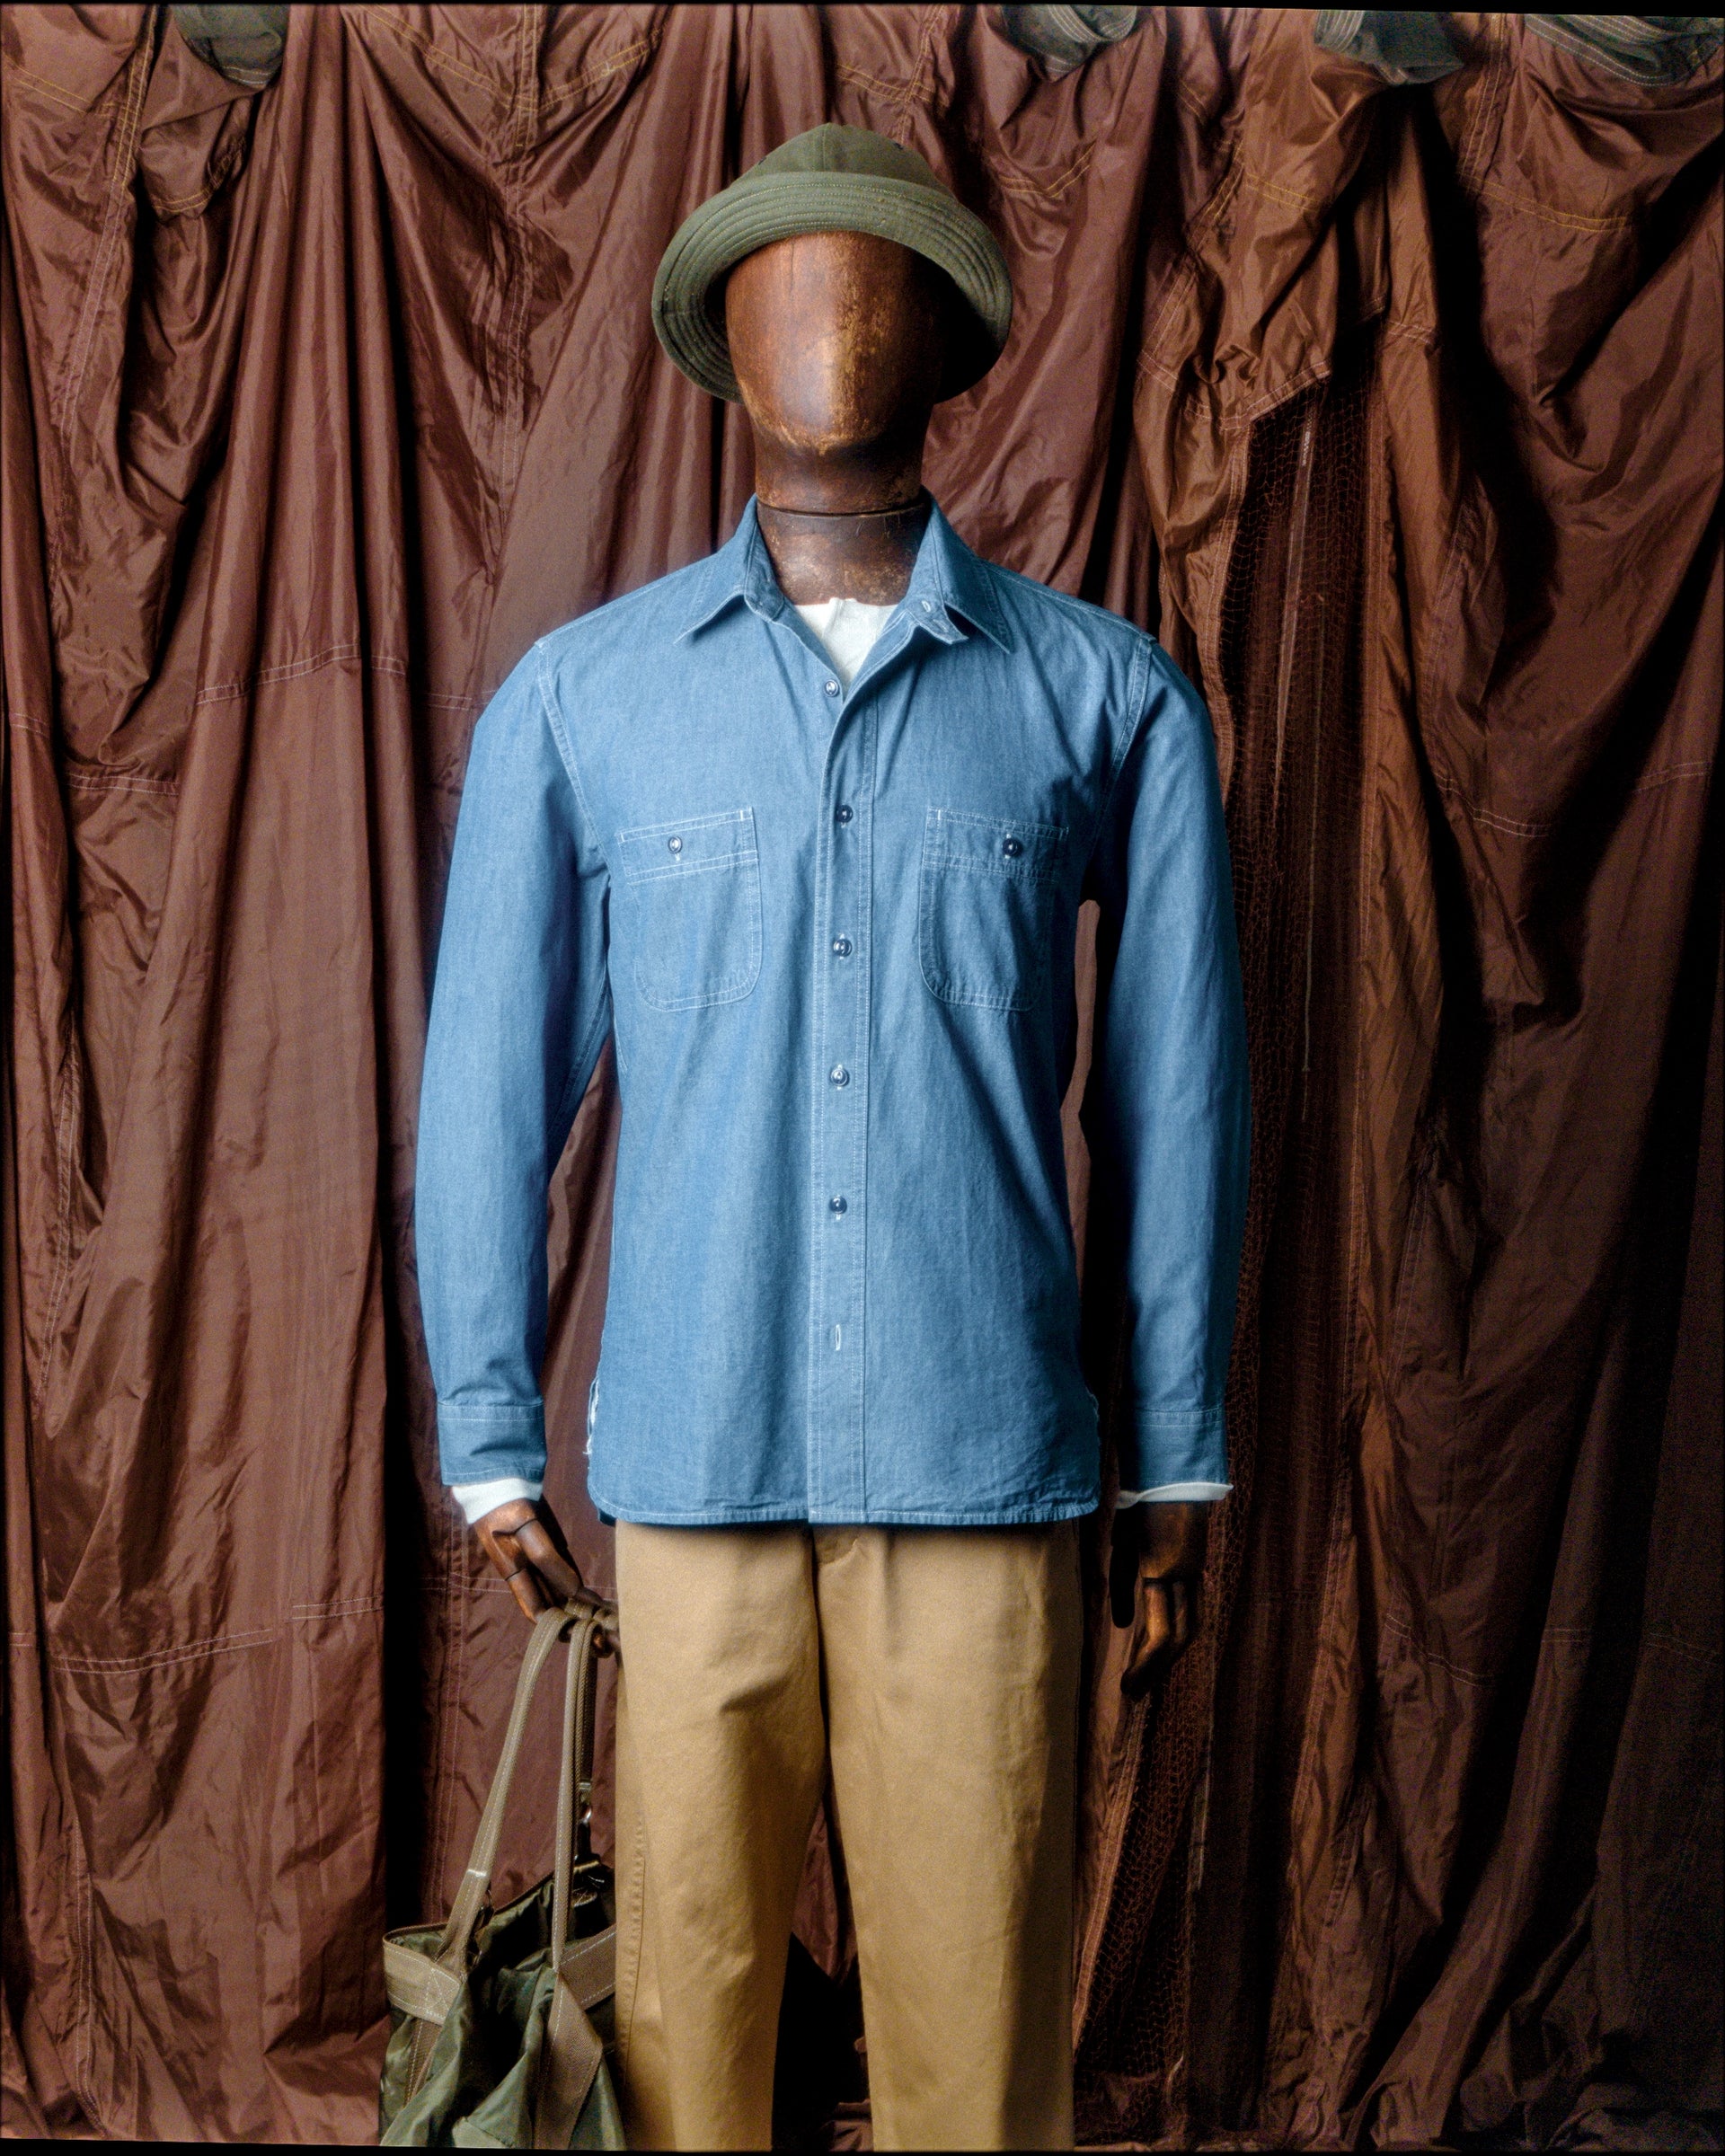 mannequin stockman porte une chemise de type work en chambray delavé , cette chemise est réalisé avec un tissu indigo japonais